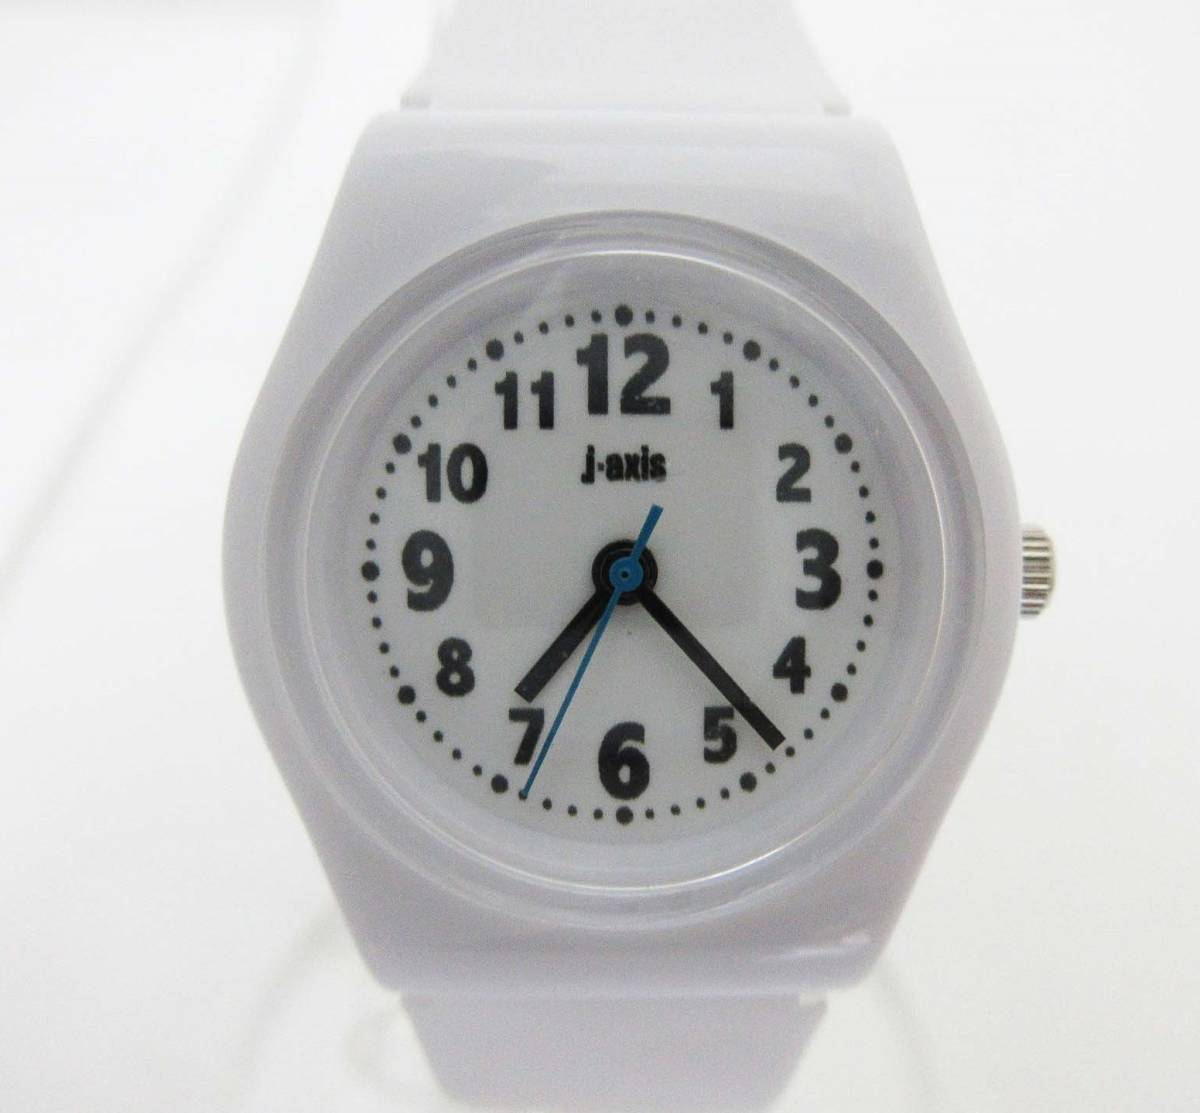 MA326【レディース腕時計】J-AXIS SUN FLAME★TCL60-W ホワイト★ジェイアクシス サンフレイム★キッズ対応ベルト クォーツ腕時計★未使用_フィルムが貼っています。